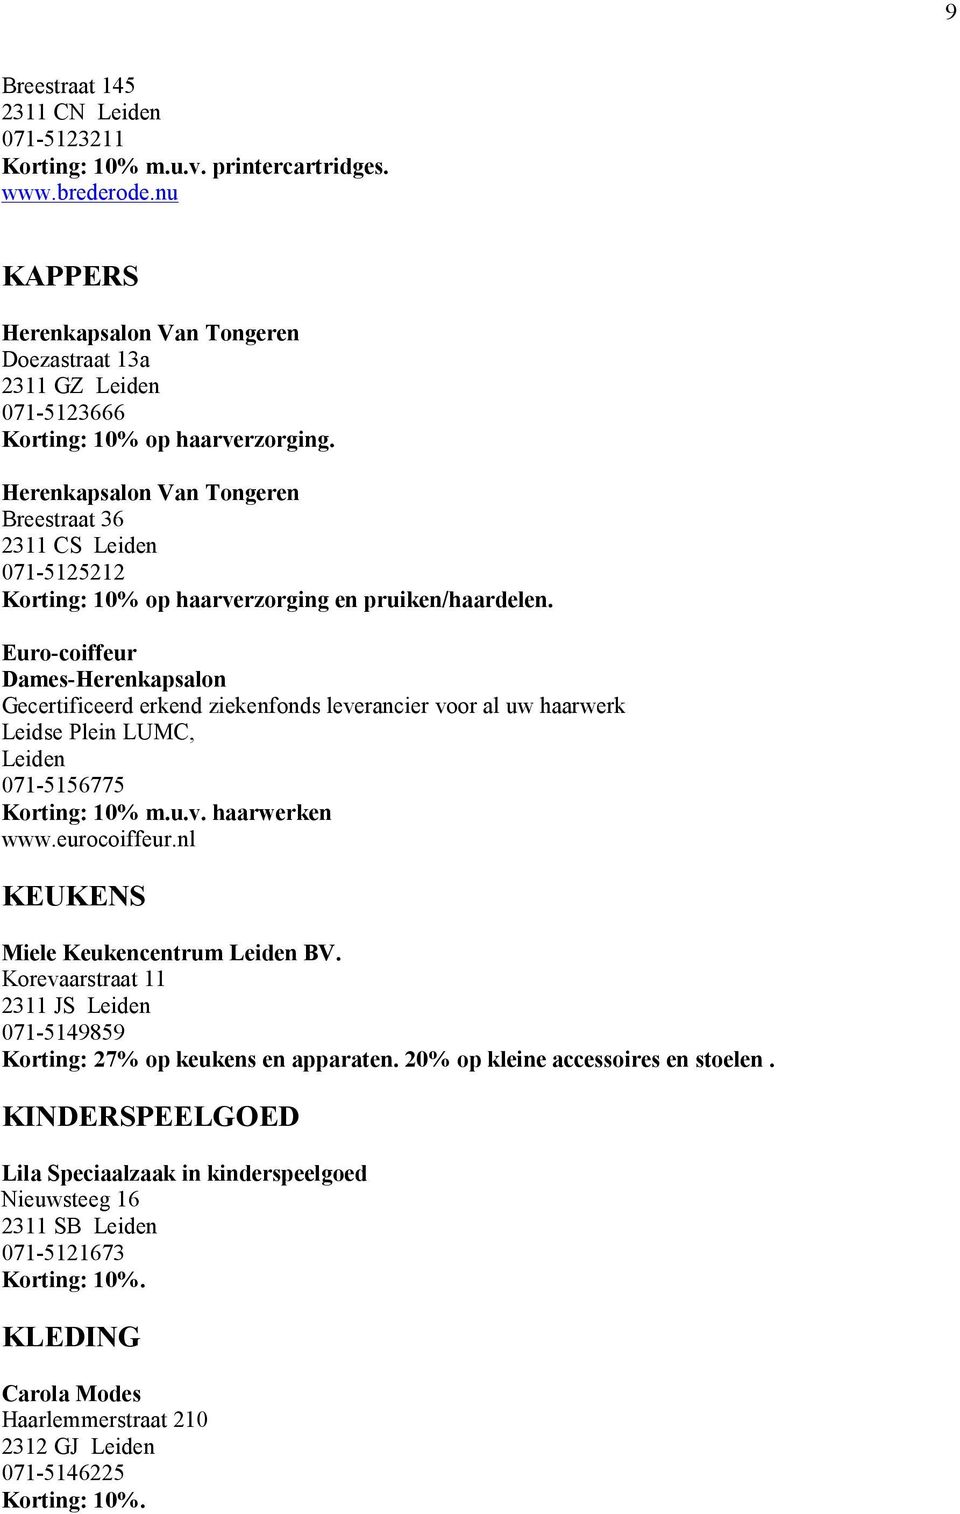 Herenkapsalon Van Tongeren Breestraat 36 2311 CS Leiden 071-5125212 Korting: 10% op haarverzorging en pruiken/haardelen.